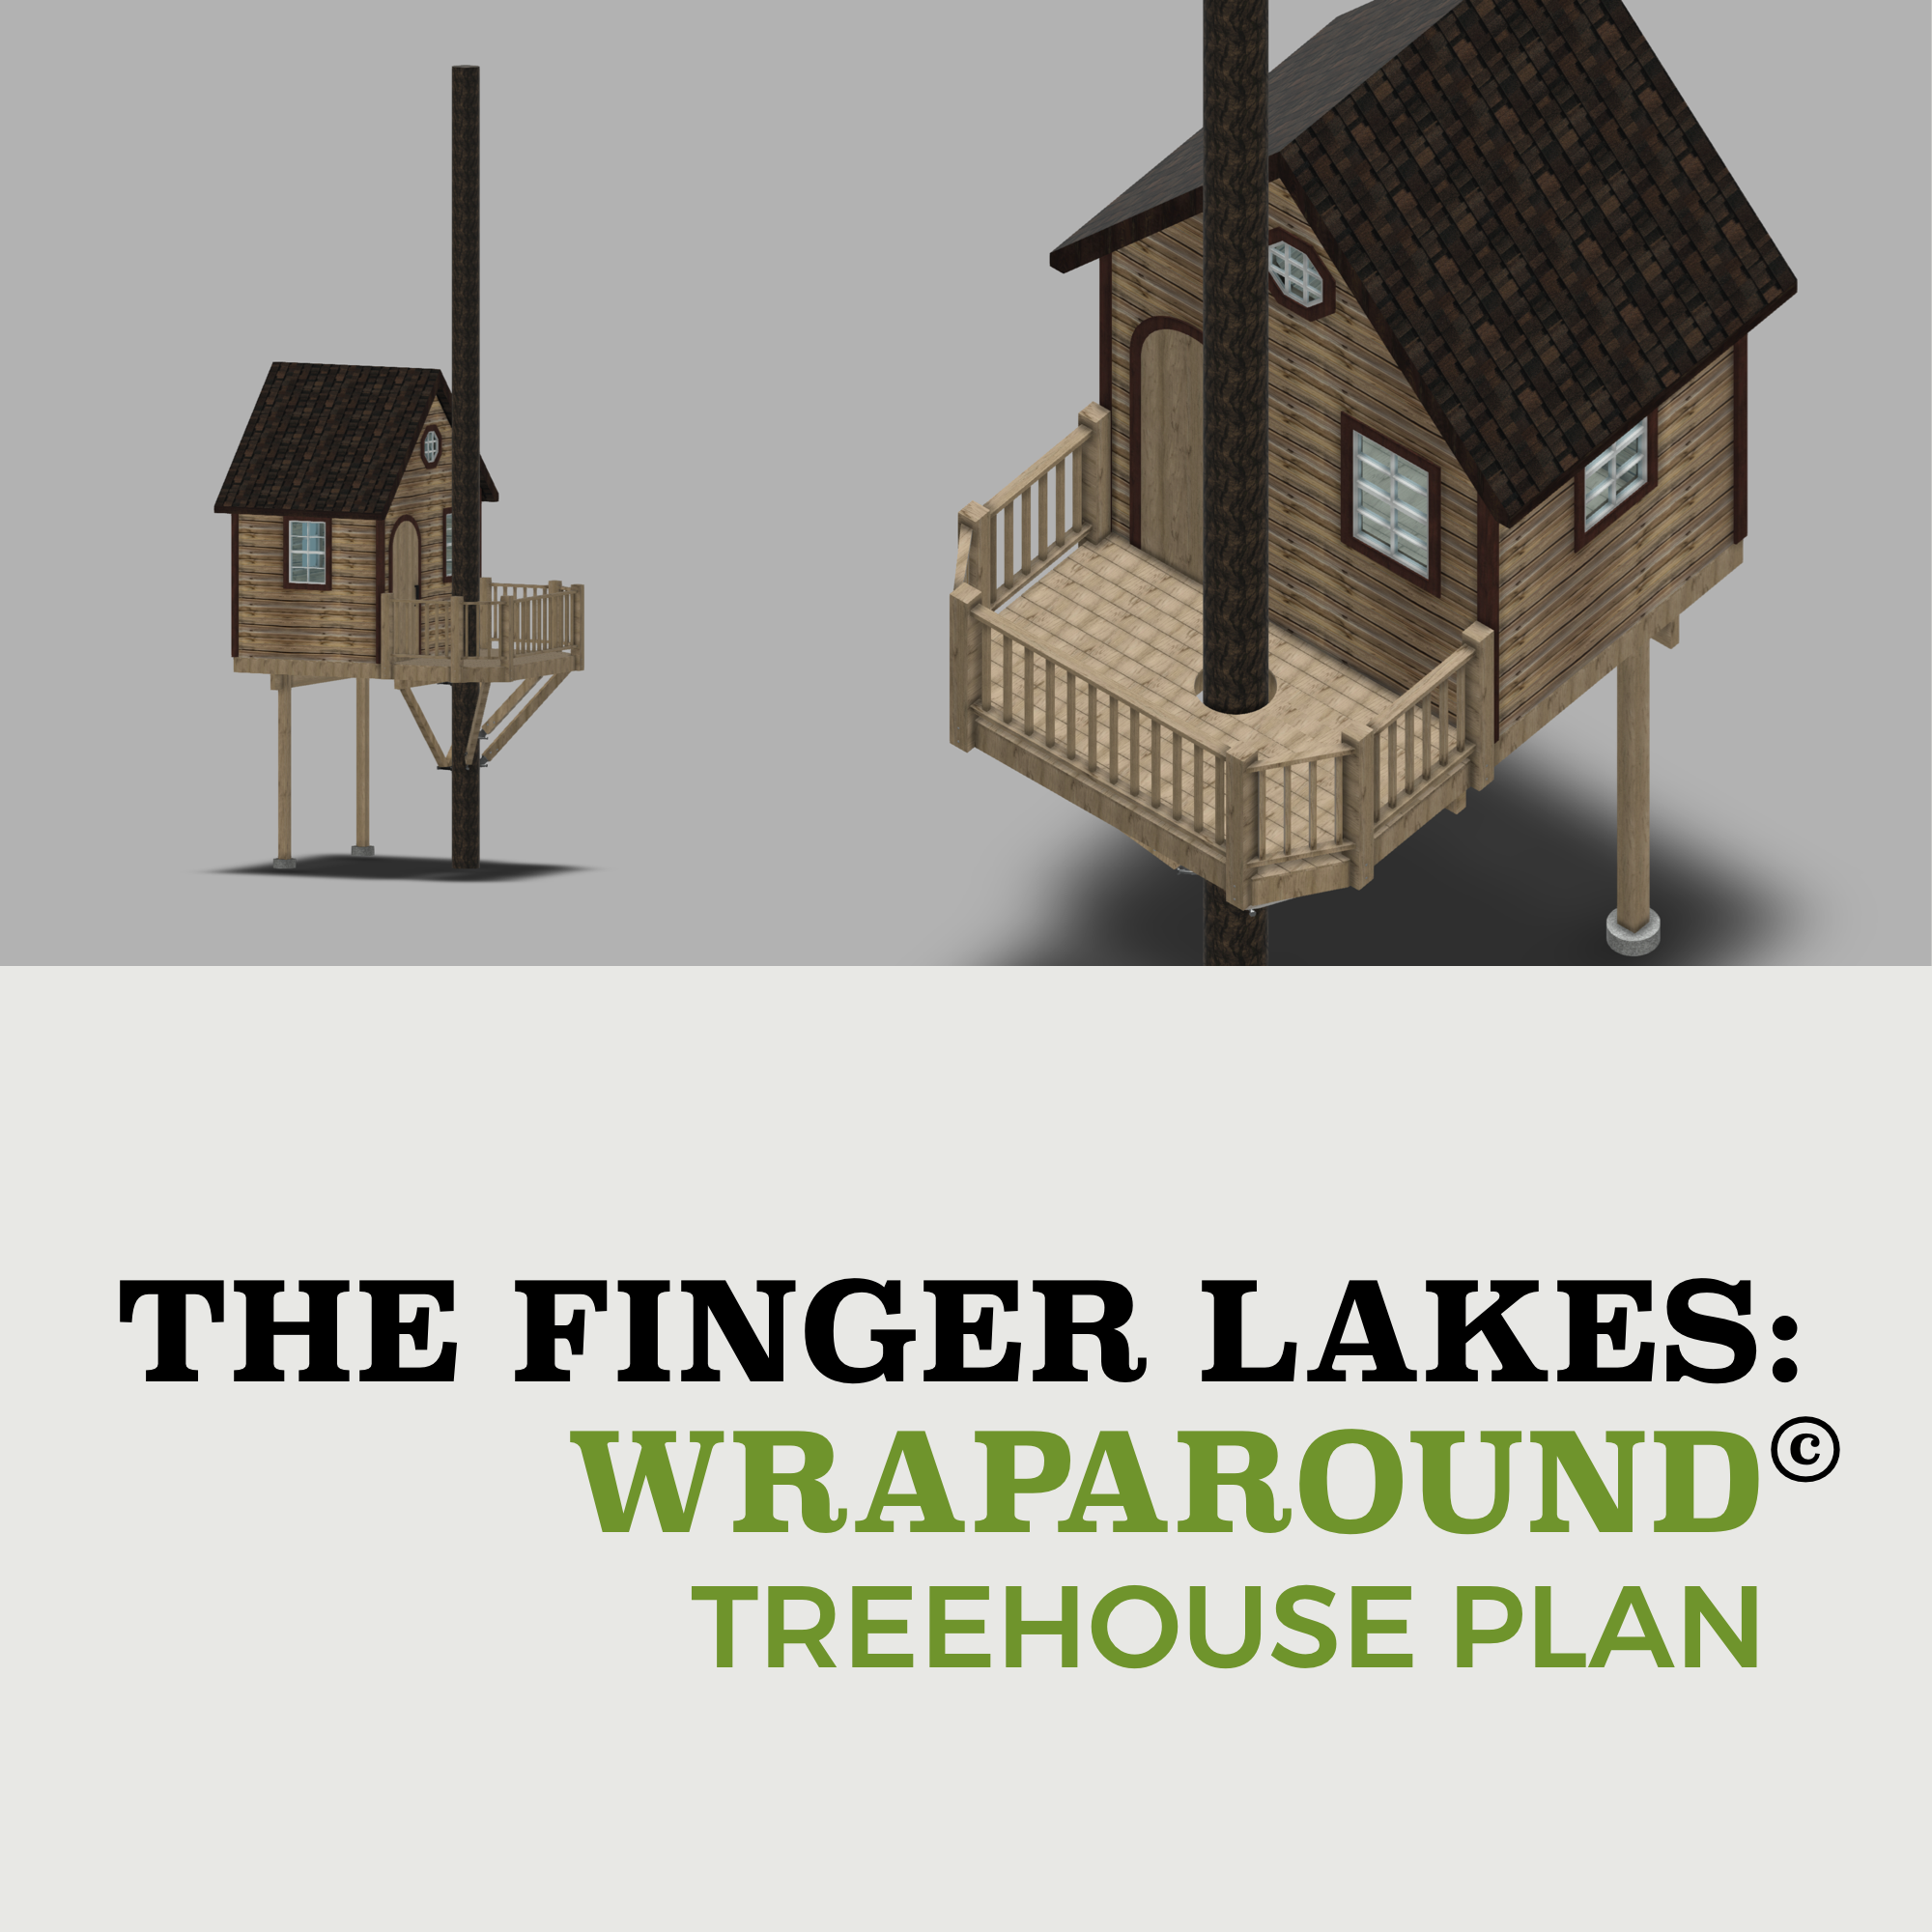 THE FINGER LAKES: WRAPAROUND © 1 Tree 2 Post Treehouse Plan